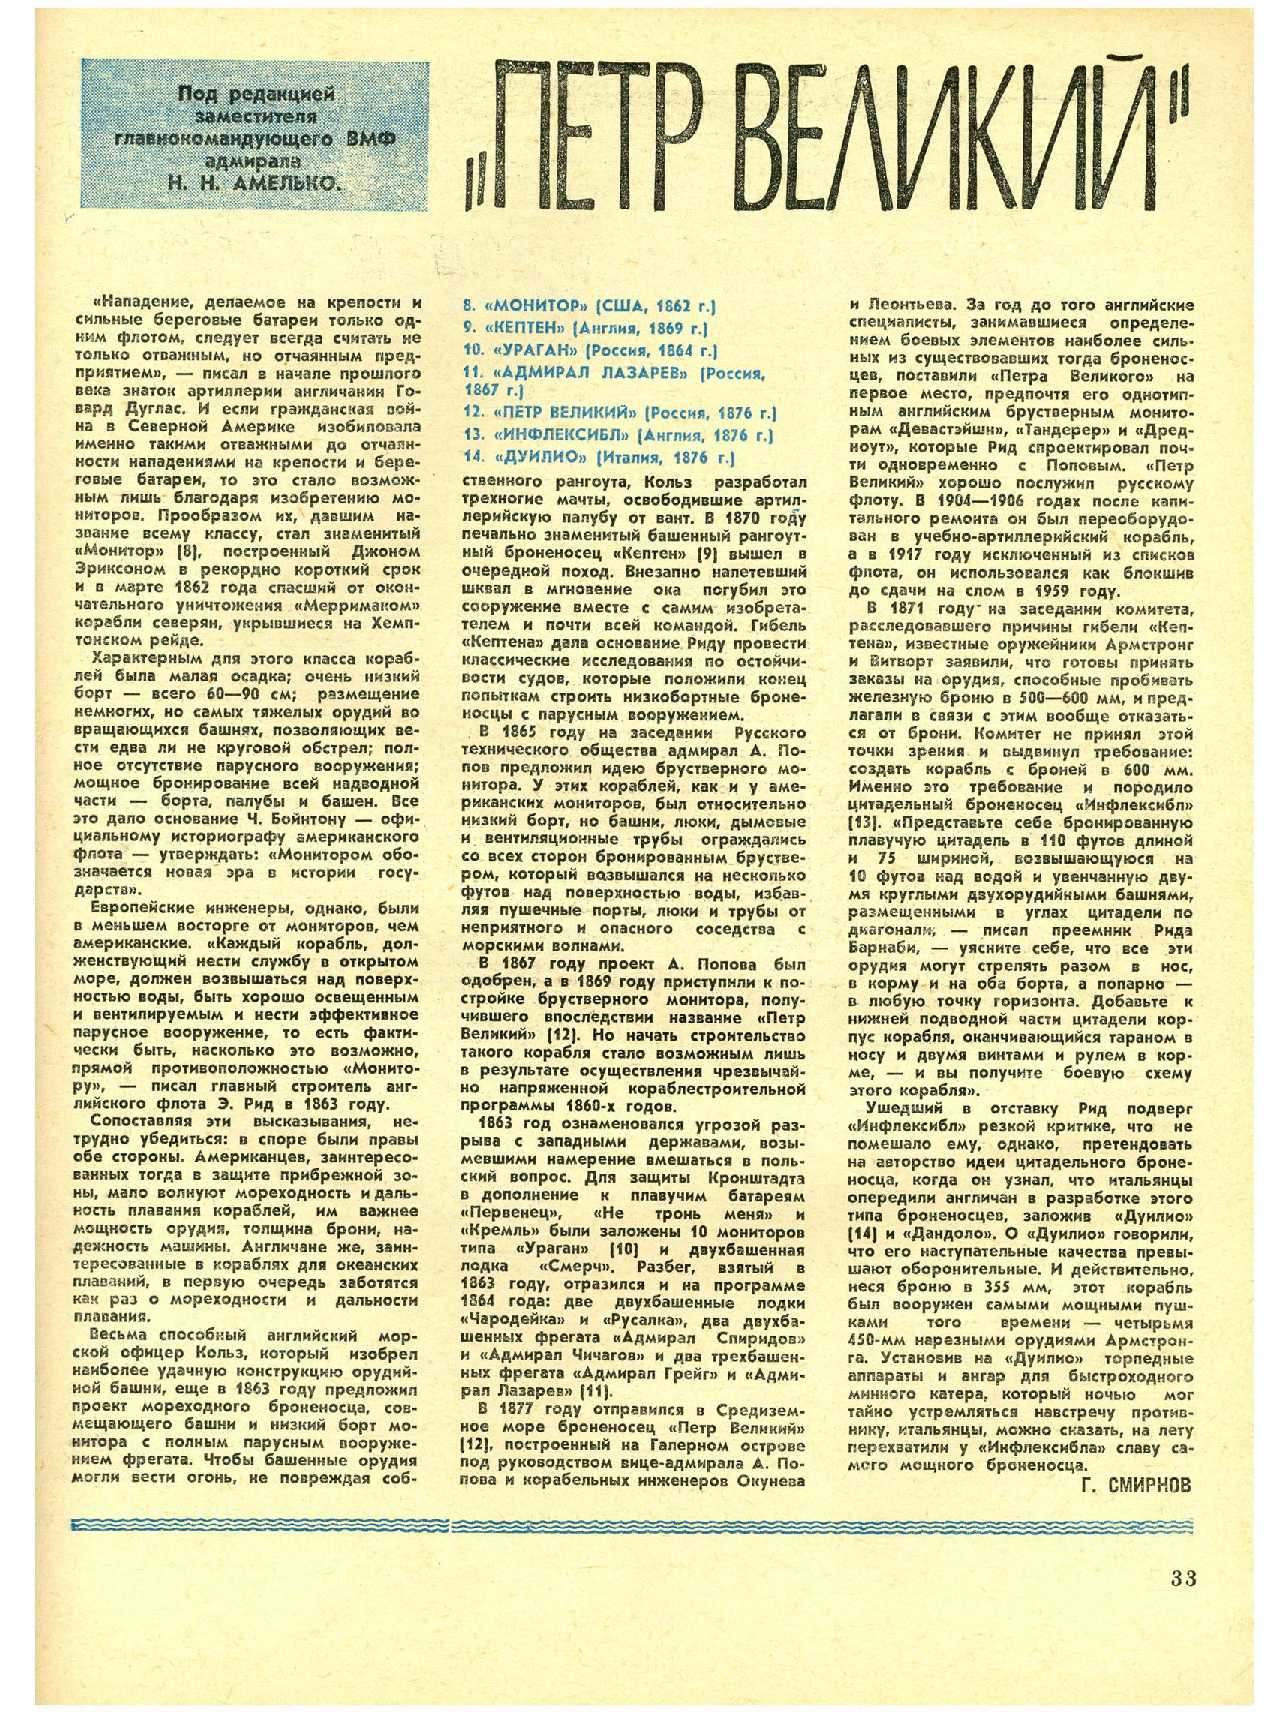 МК 10, 1971, 33 c.